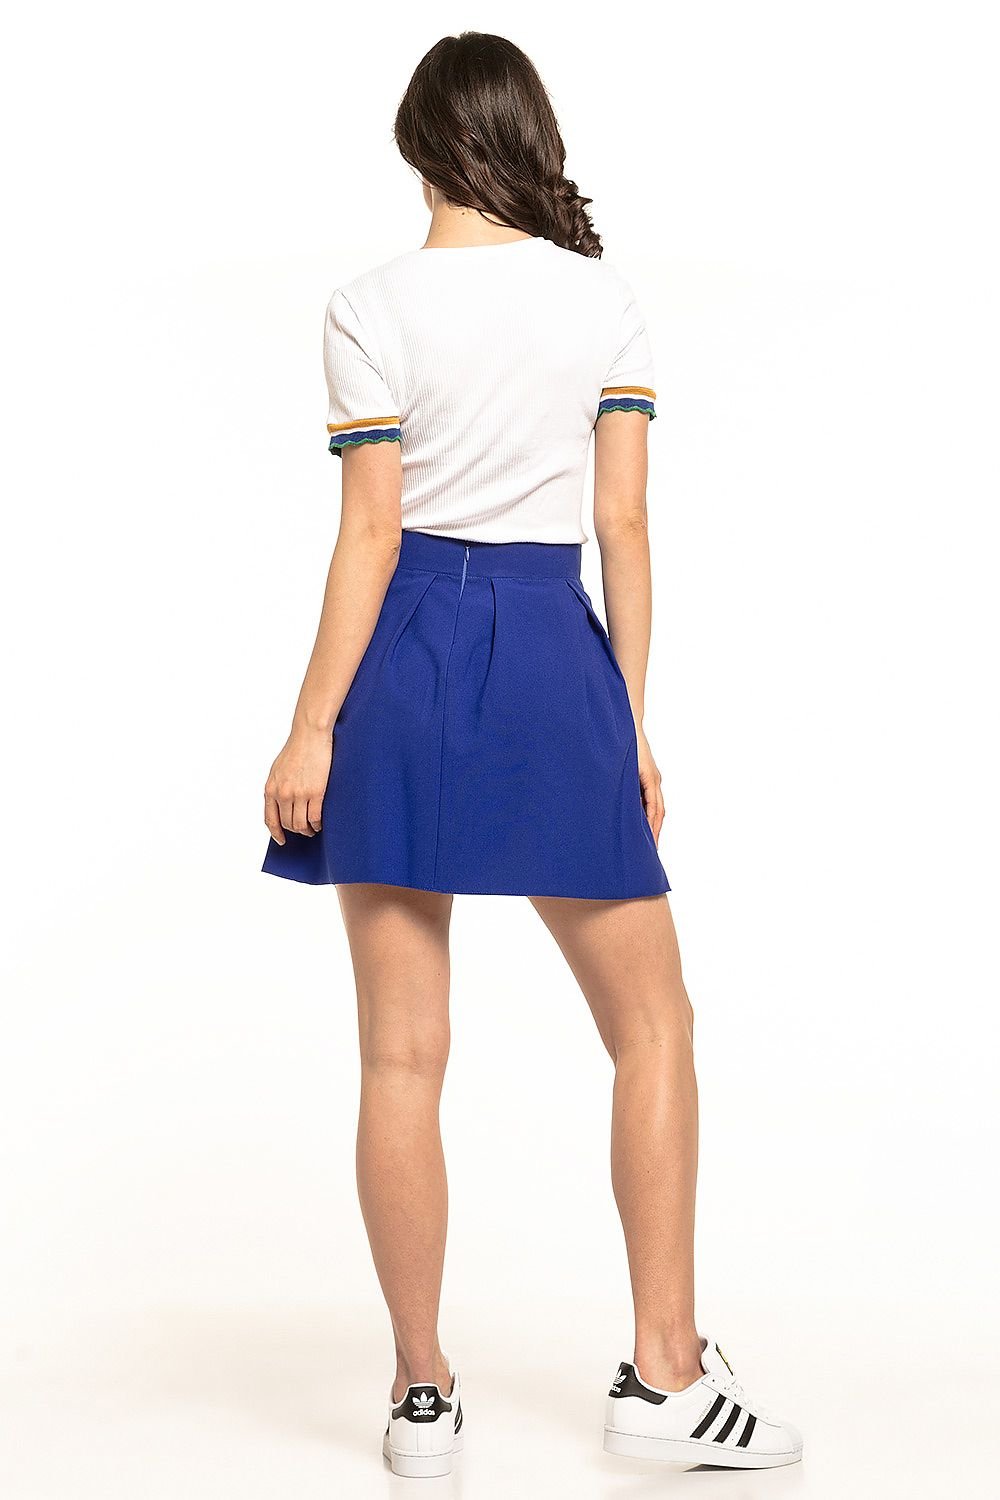 Jupe plissée bleu marine courte et élégante, idéale pour un style décontracté ou habillé, disponible en ligne.